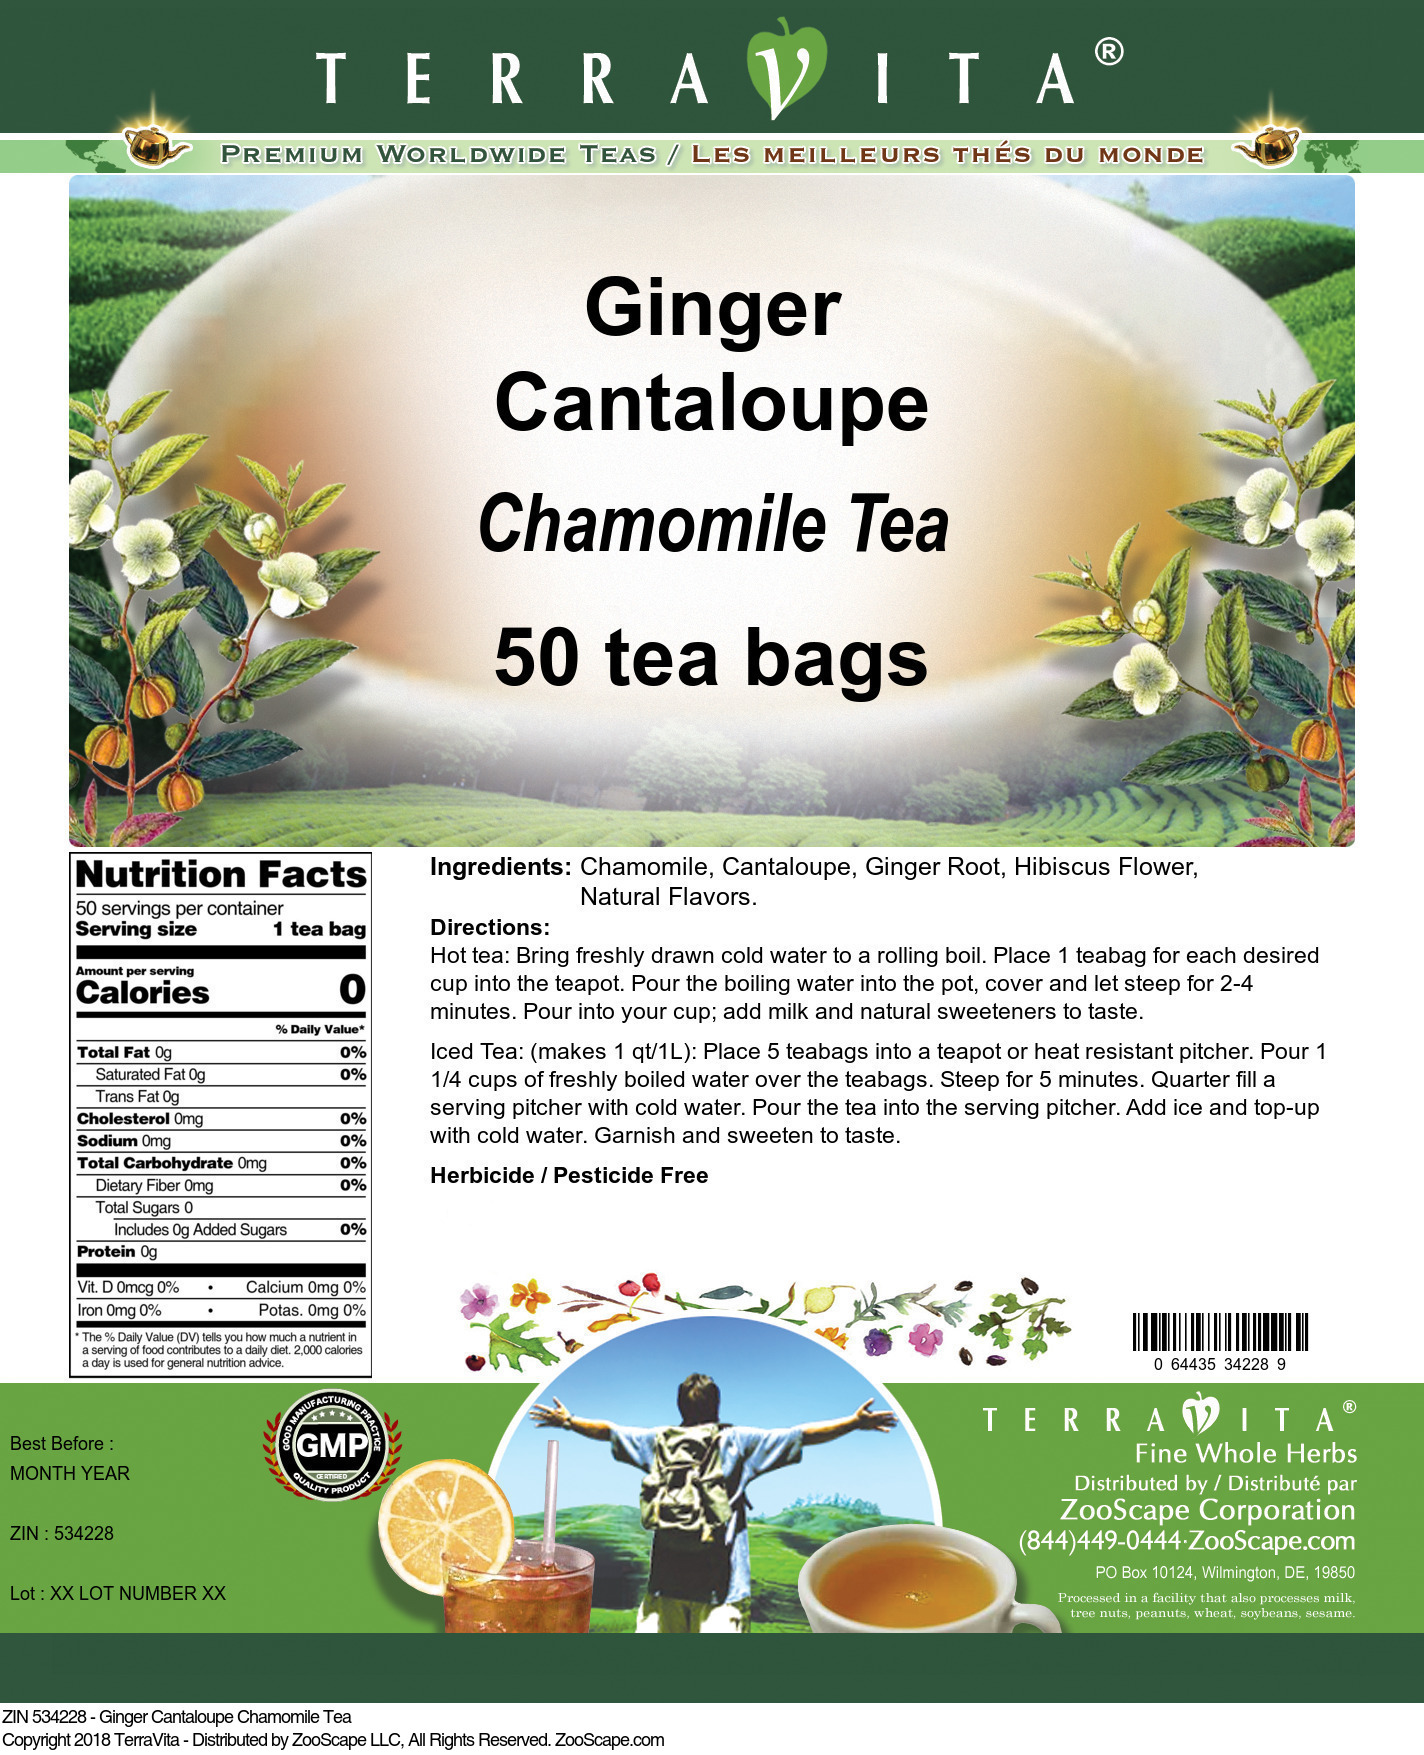 Ginger Cantaloupe Chamomile Tea - Label